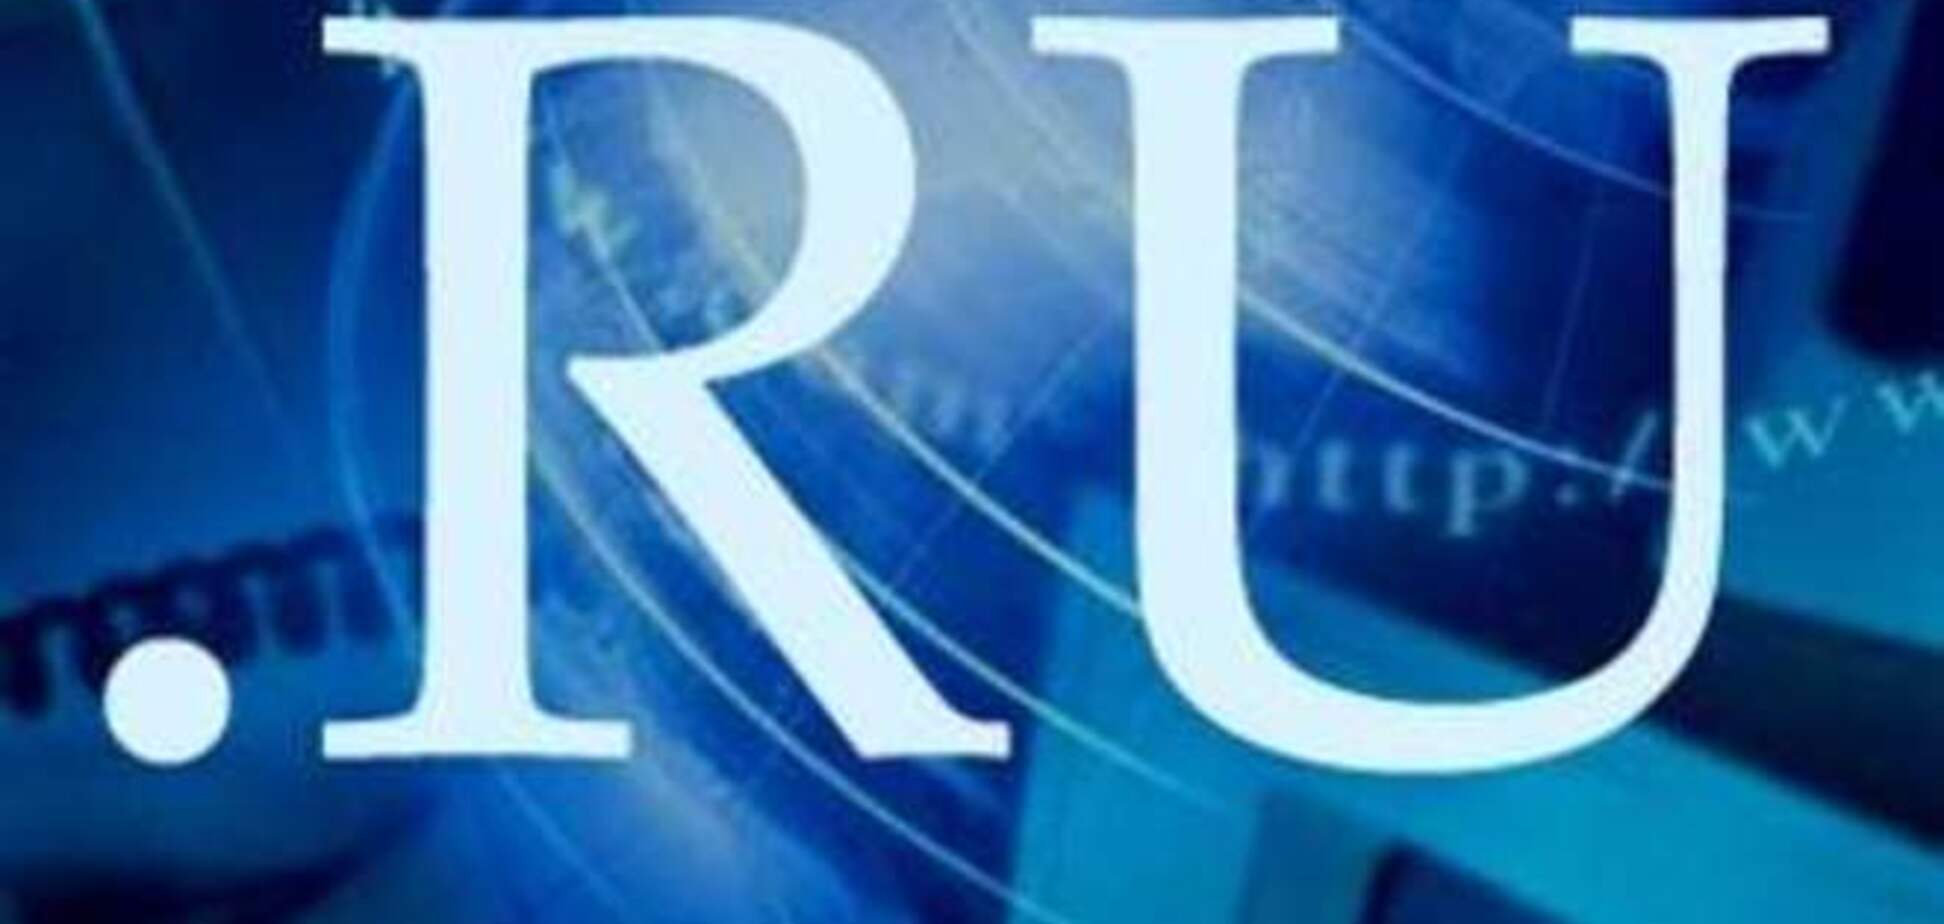 Киевсовету  и КГГА официально запретили пользоваться почтой с доменом RU